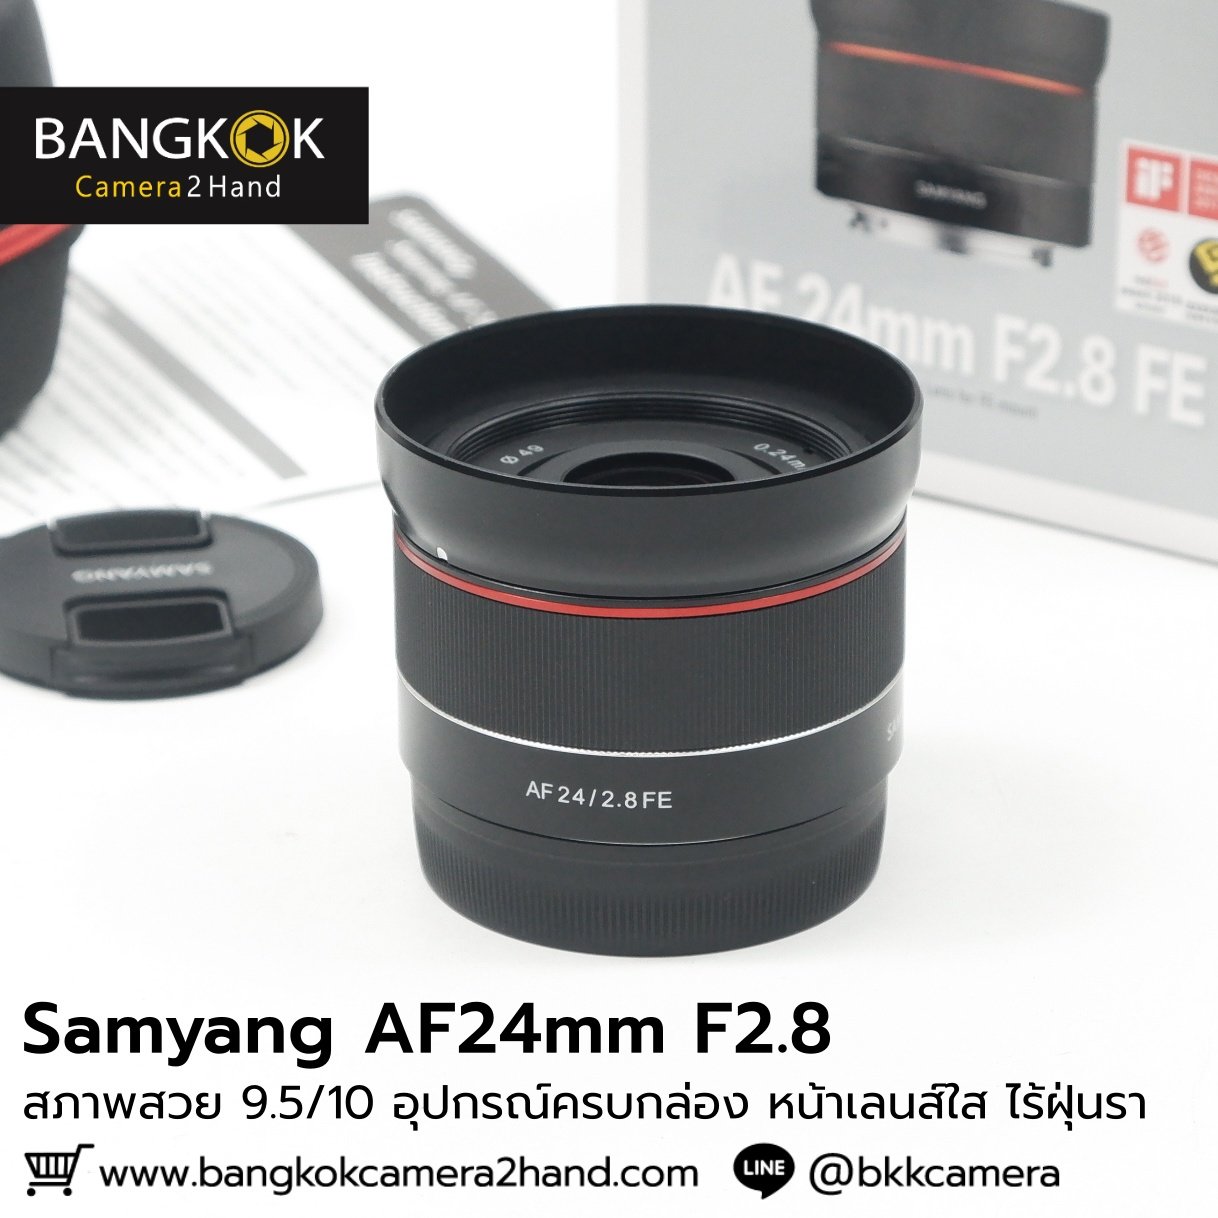 Samyang 24mm F2.8 ครบกล่อง หน้าเลนส์ใส